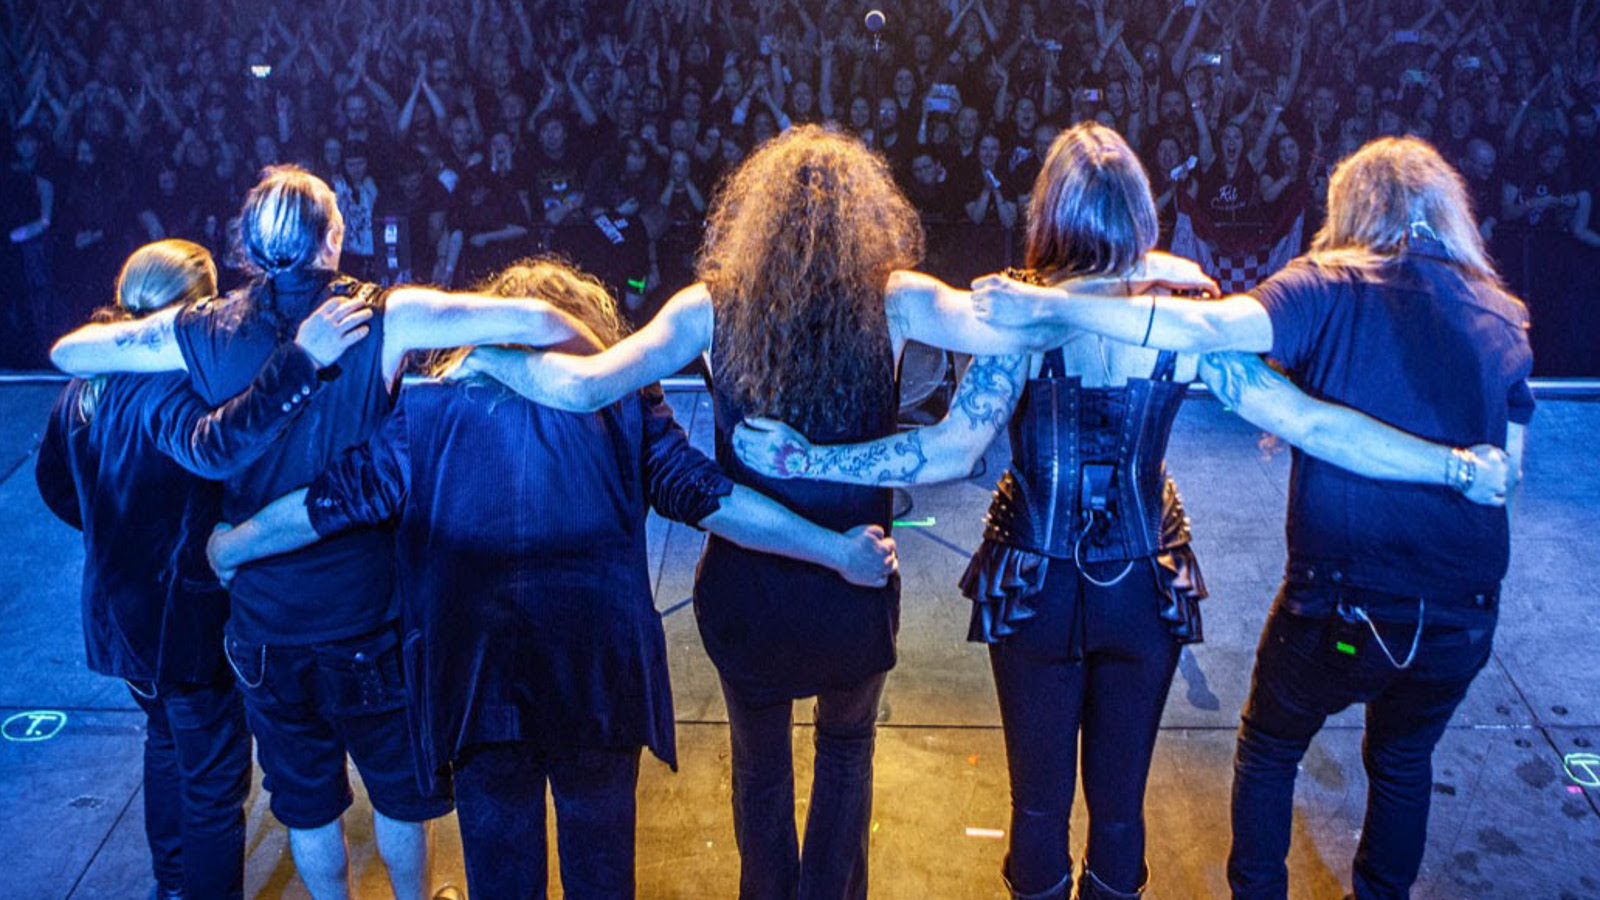 Kuvassa ovat Nightwishin jäsenet seisomassa yleisön edessä Wembleyn stadionilla yleisön edessä yhteiskuvassa. Kuvan sävy on sininen.